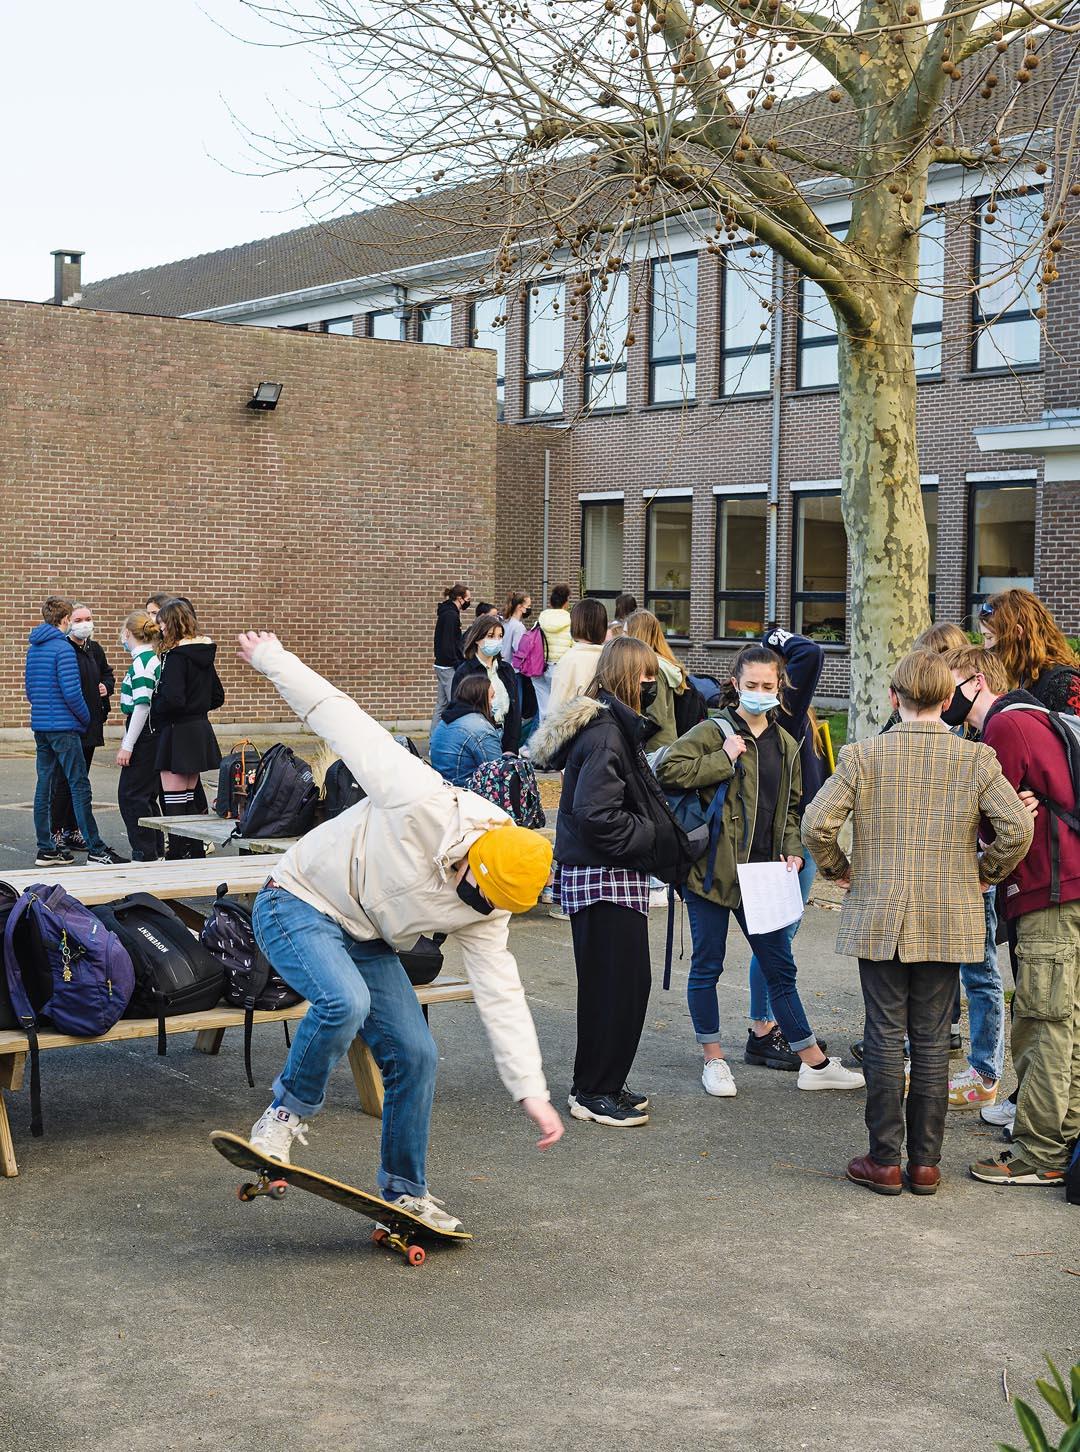 Des jeunes se parlent sur le terrain de jeu  et un garçon fait des manoeuvres sur son skateboard